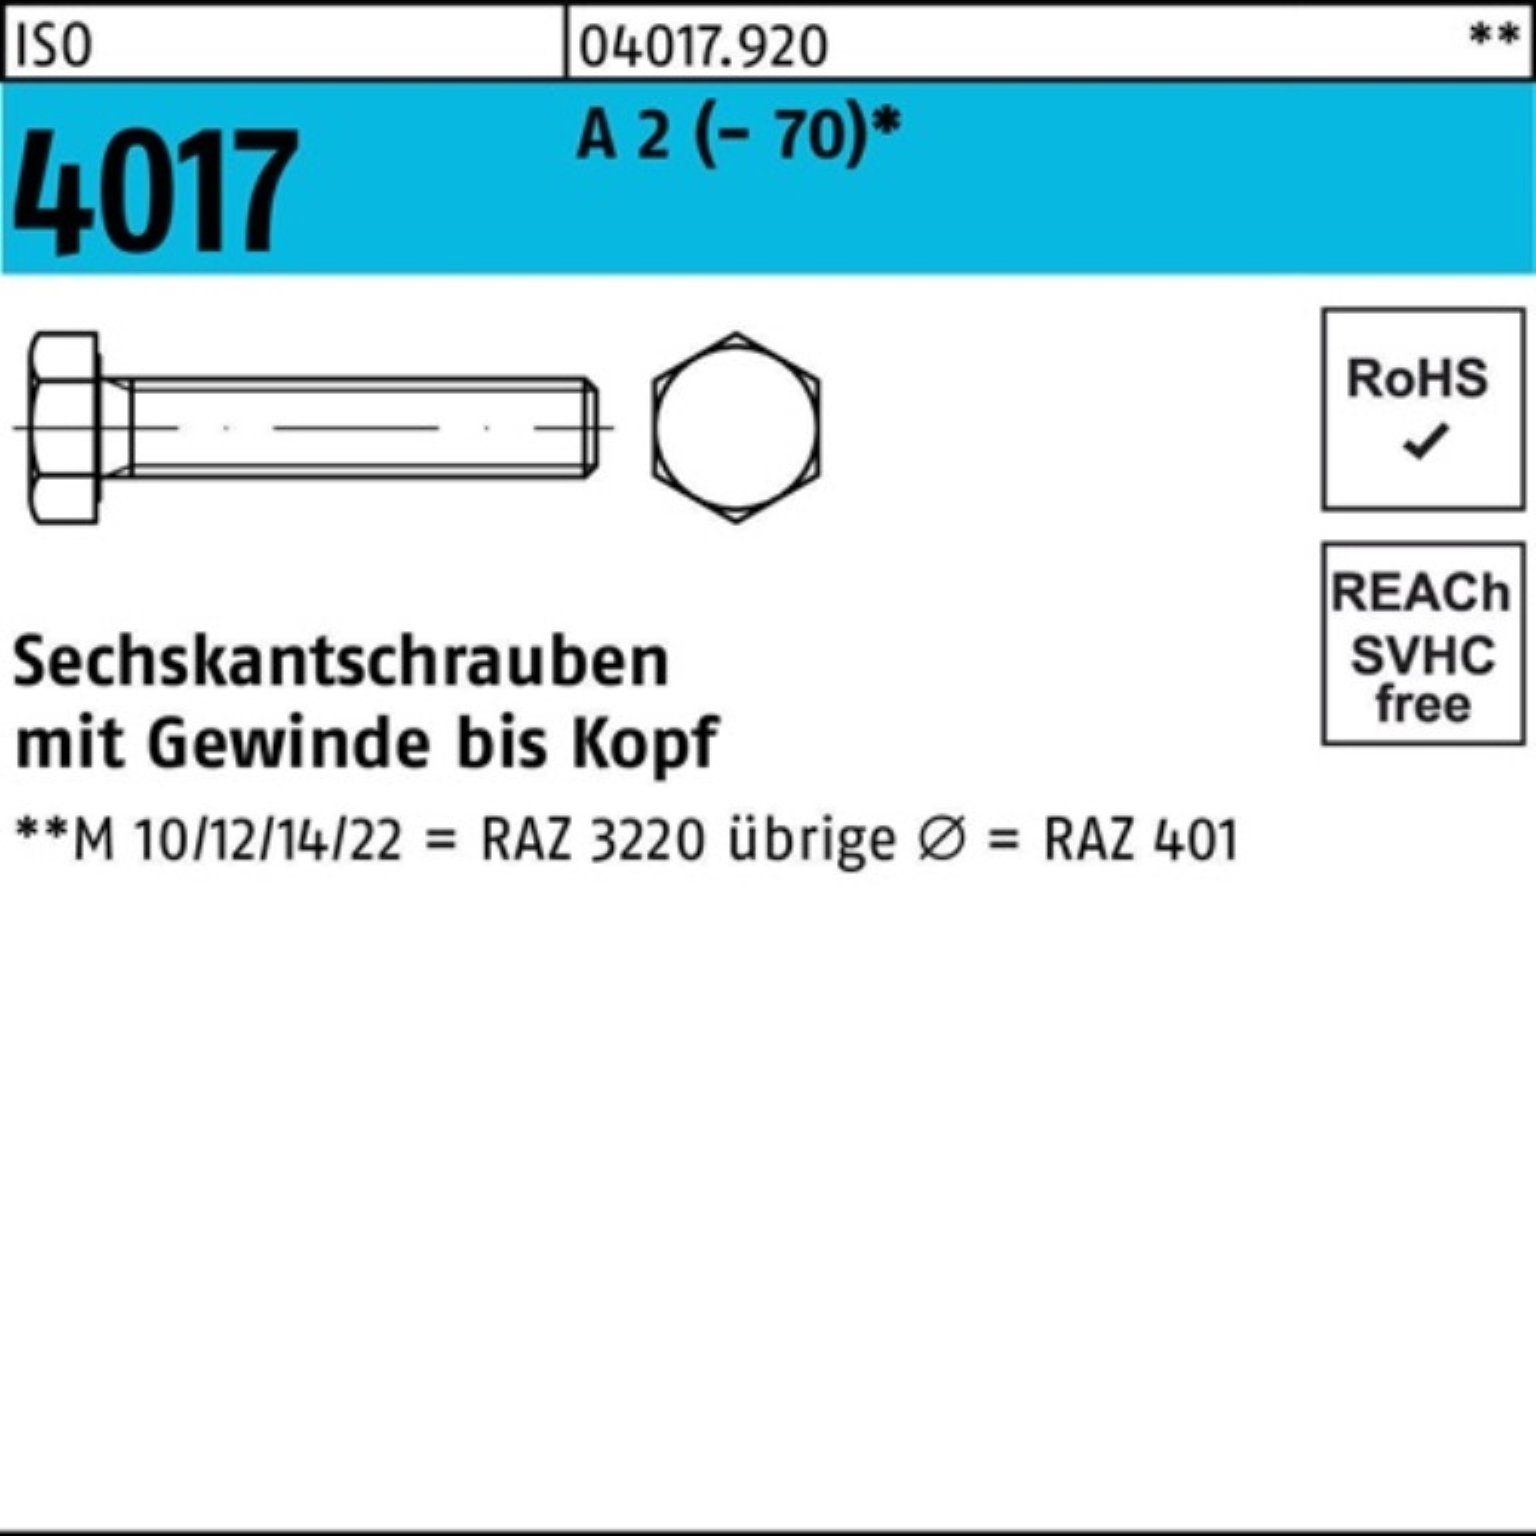 Bufab Sechskantschraube 100er Pack Sechskantschraube ISO 4017 VG M10x 160 A 2 (70) 1 Stück